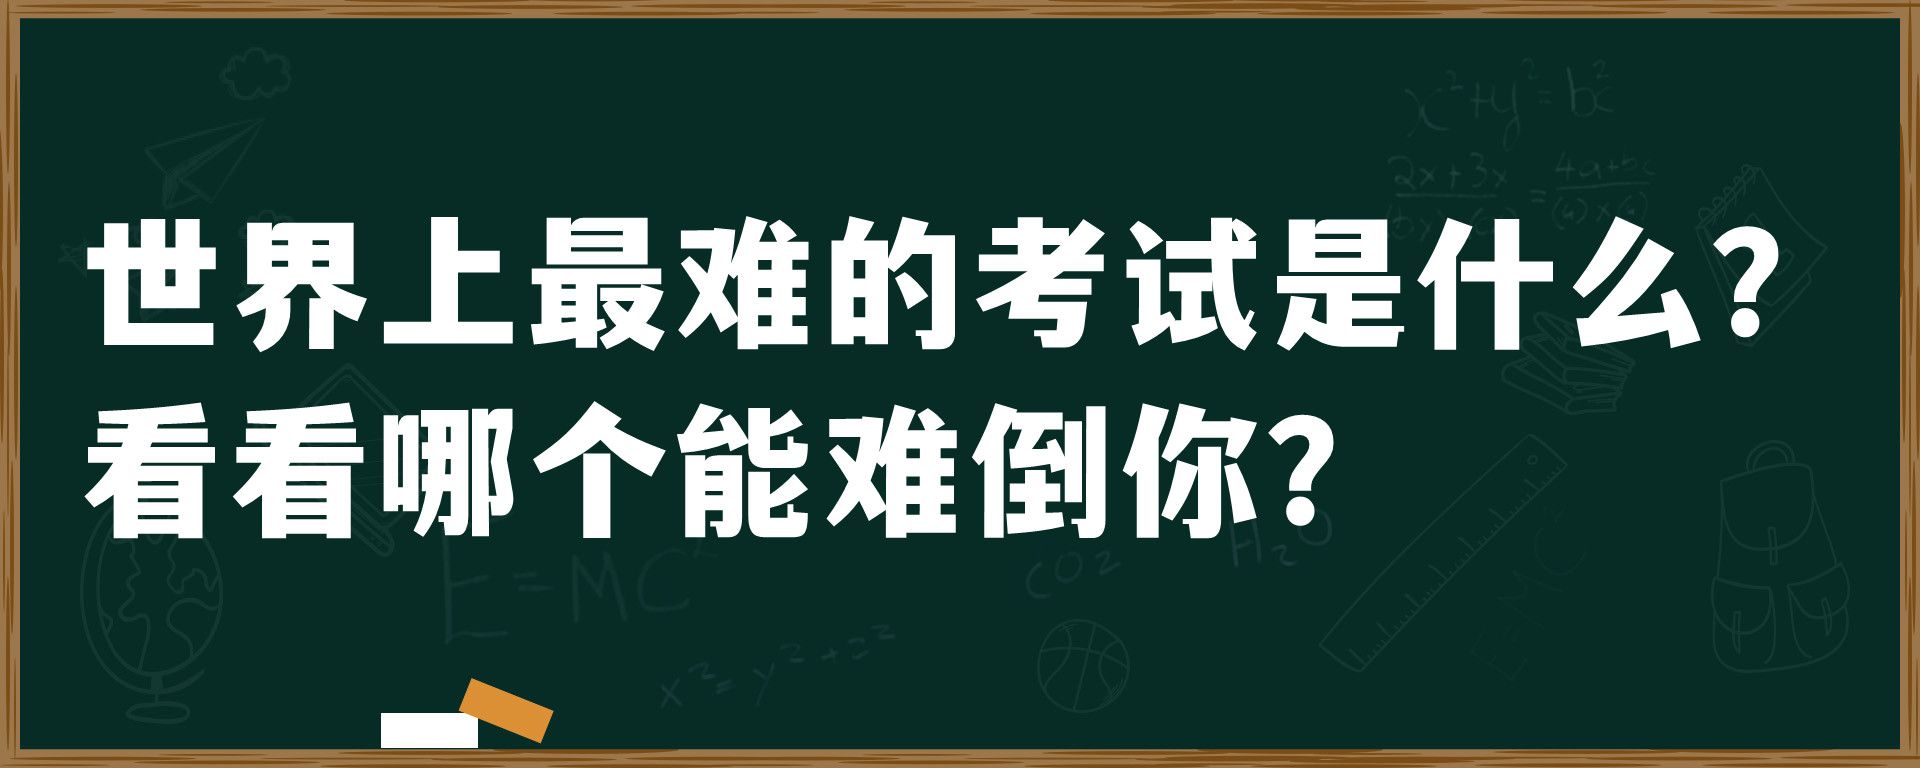 中文为什么是世界上最难的语言？外国人：真的很费劲啊！ - 哔哩哔哩